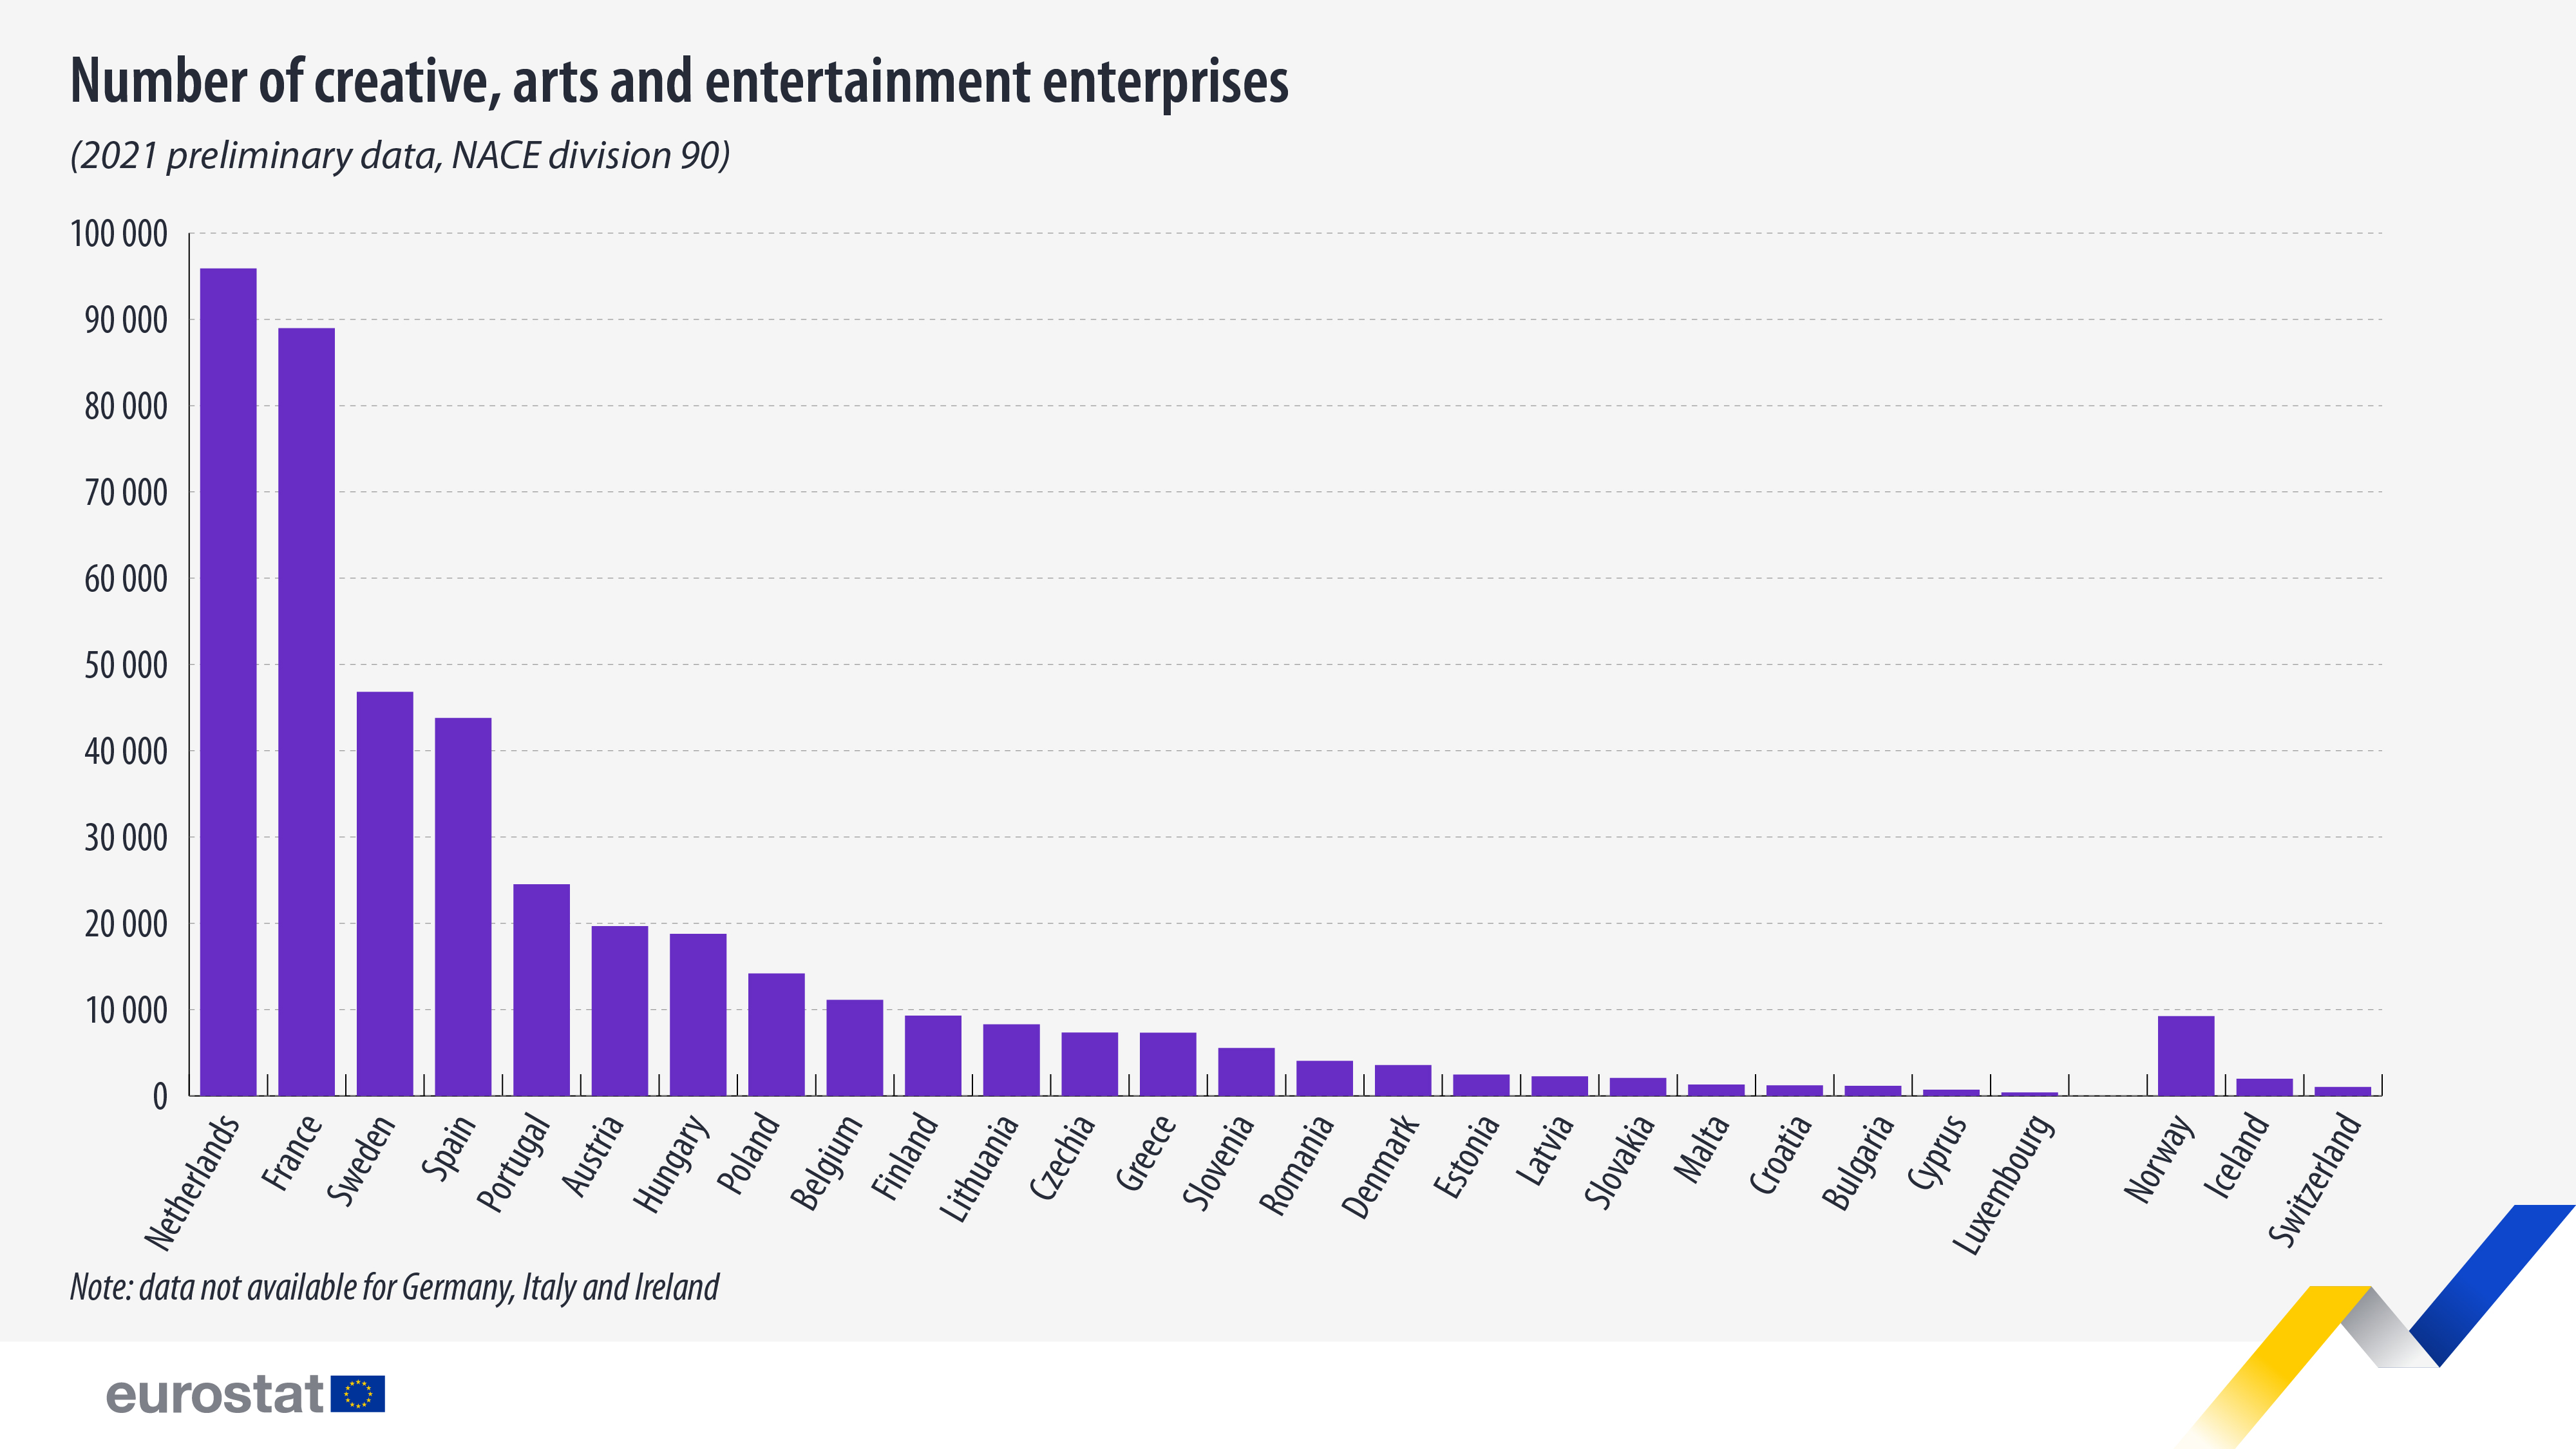 Gráfico de barras: número de instituciones creativas, artísticas y de entretenimiento (datos sin procesar de 2021, sección 90 de la NACE)